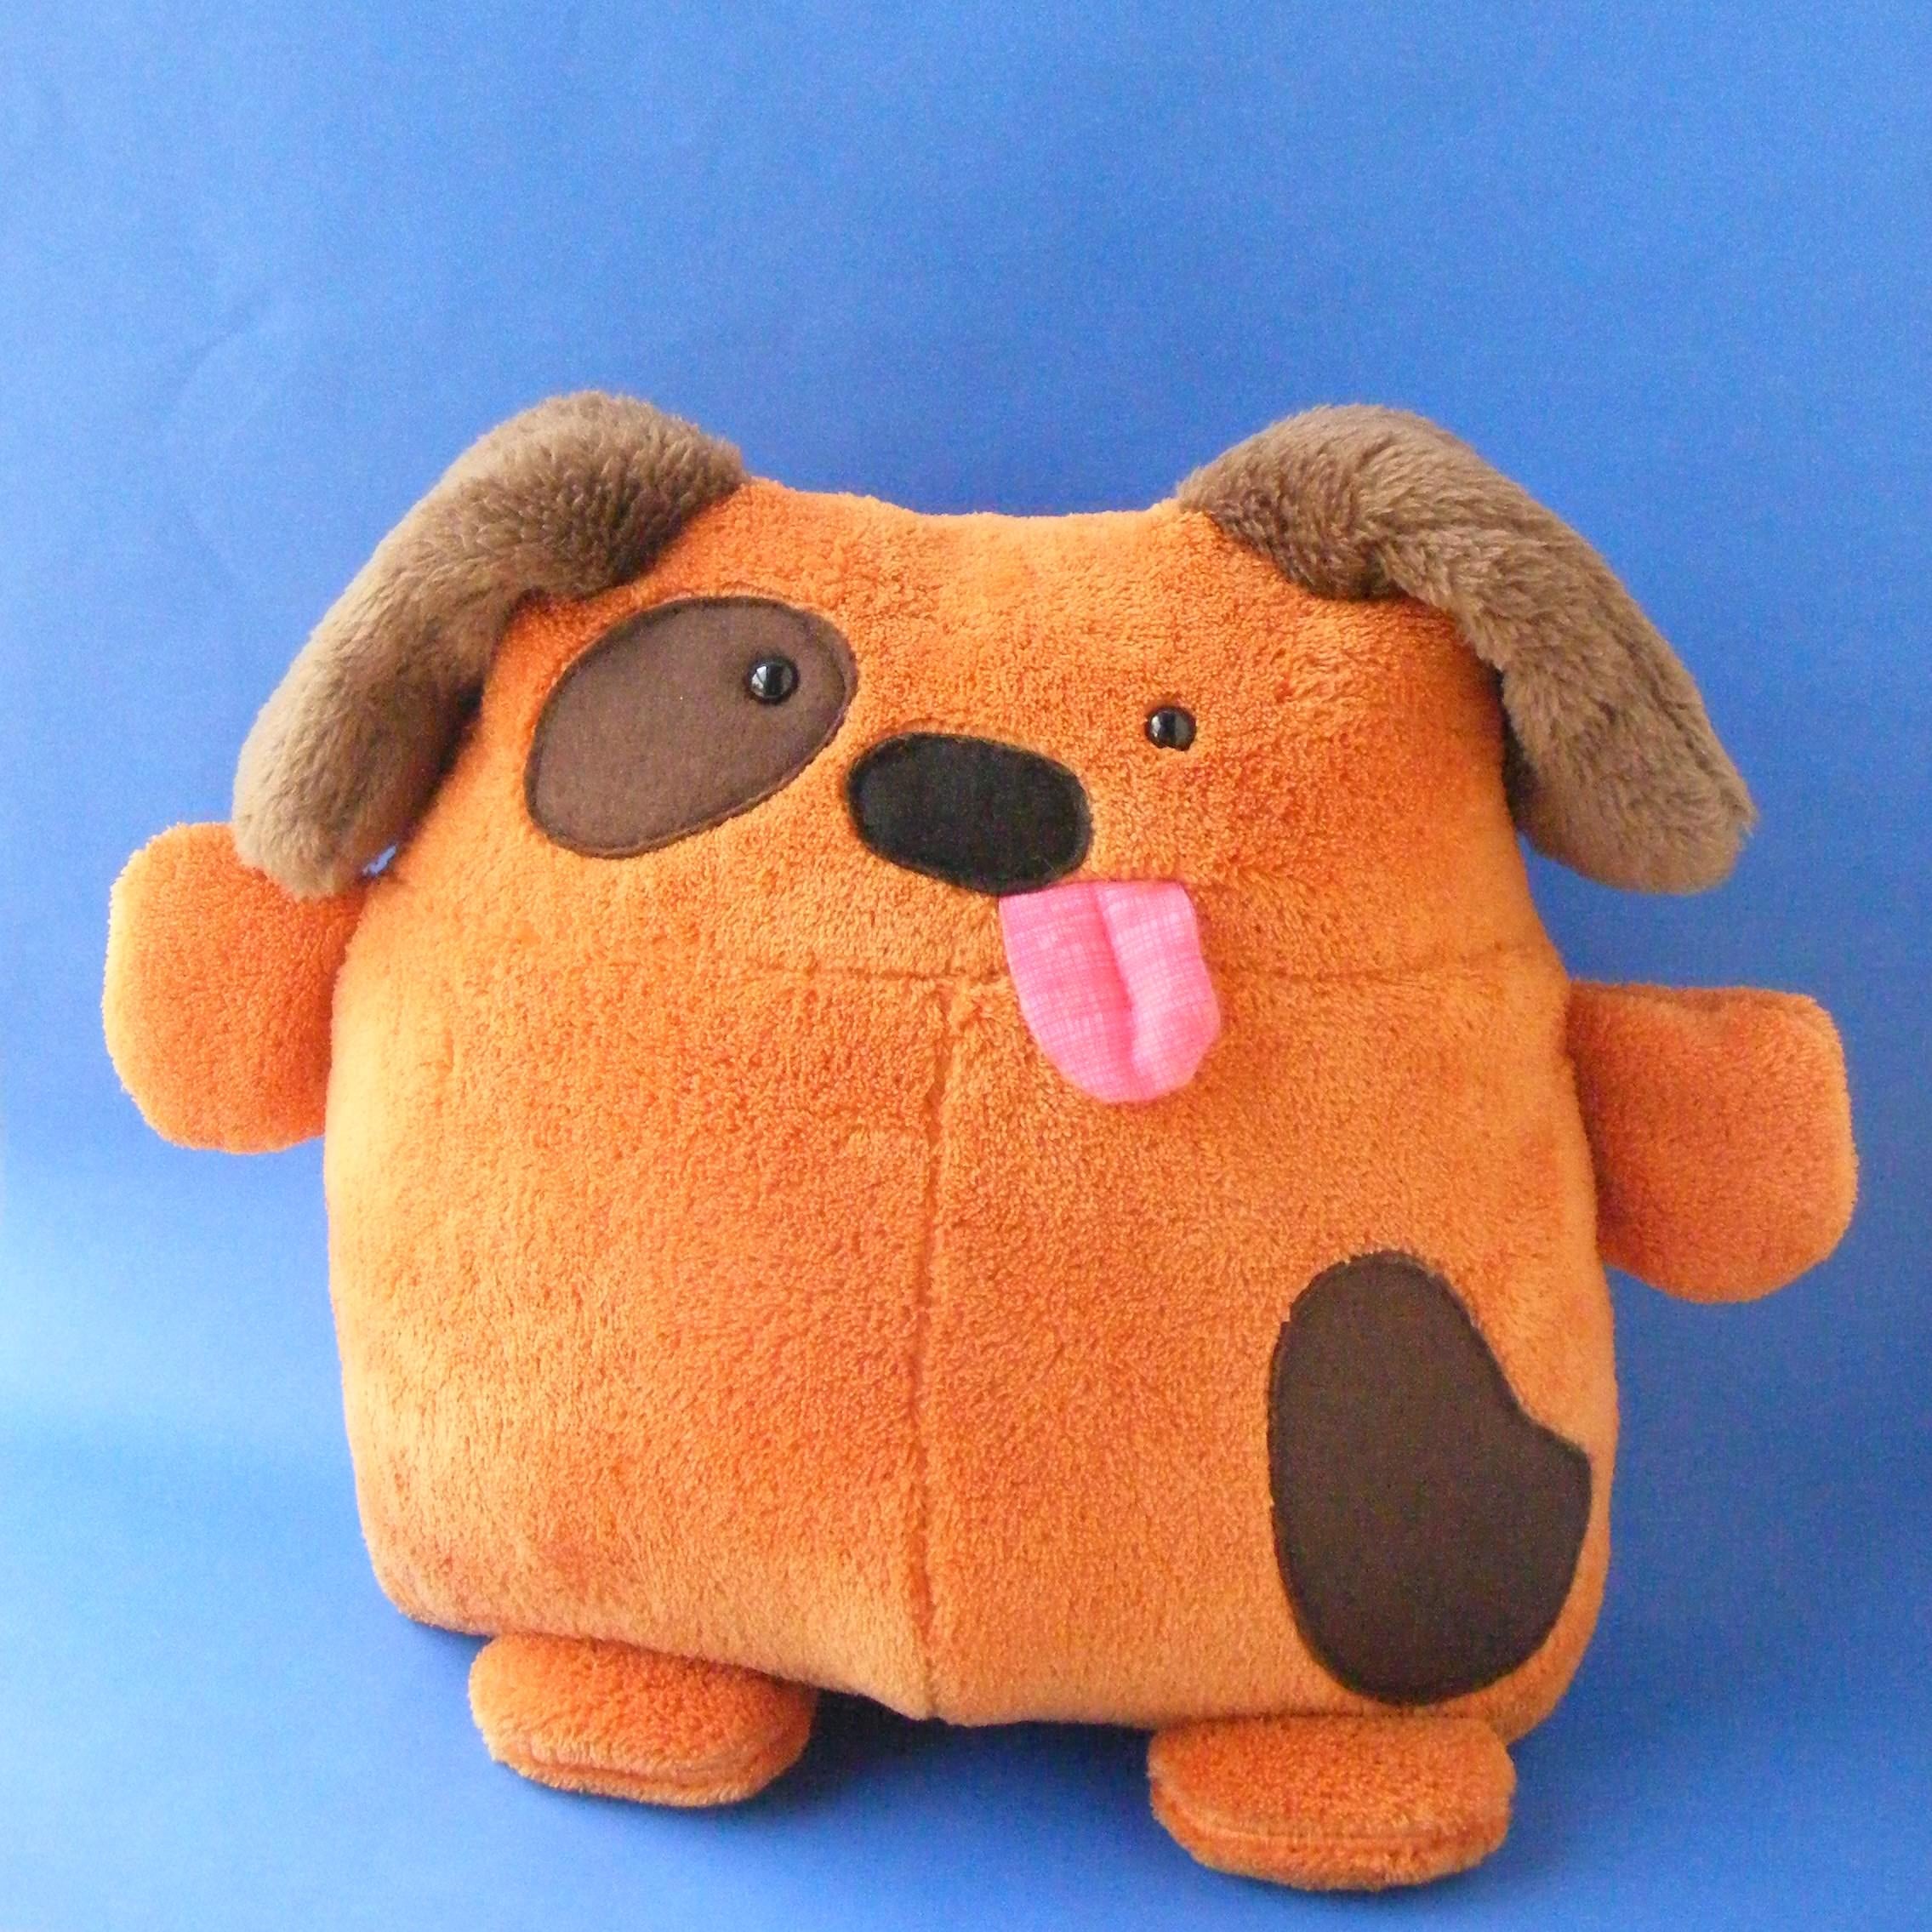 Buster - a dog stuffed animal pattern